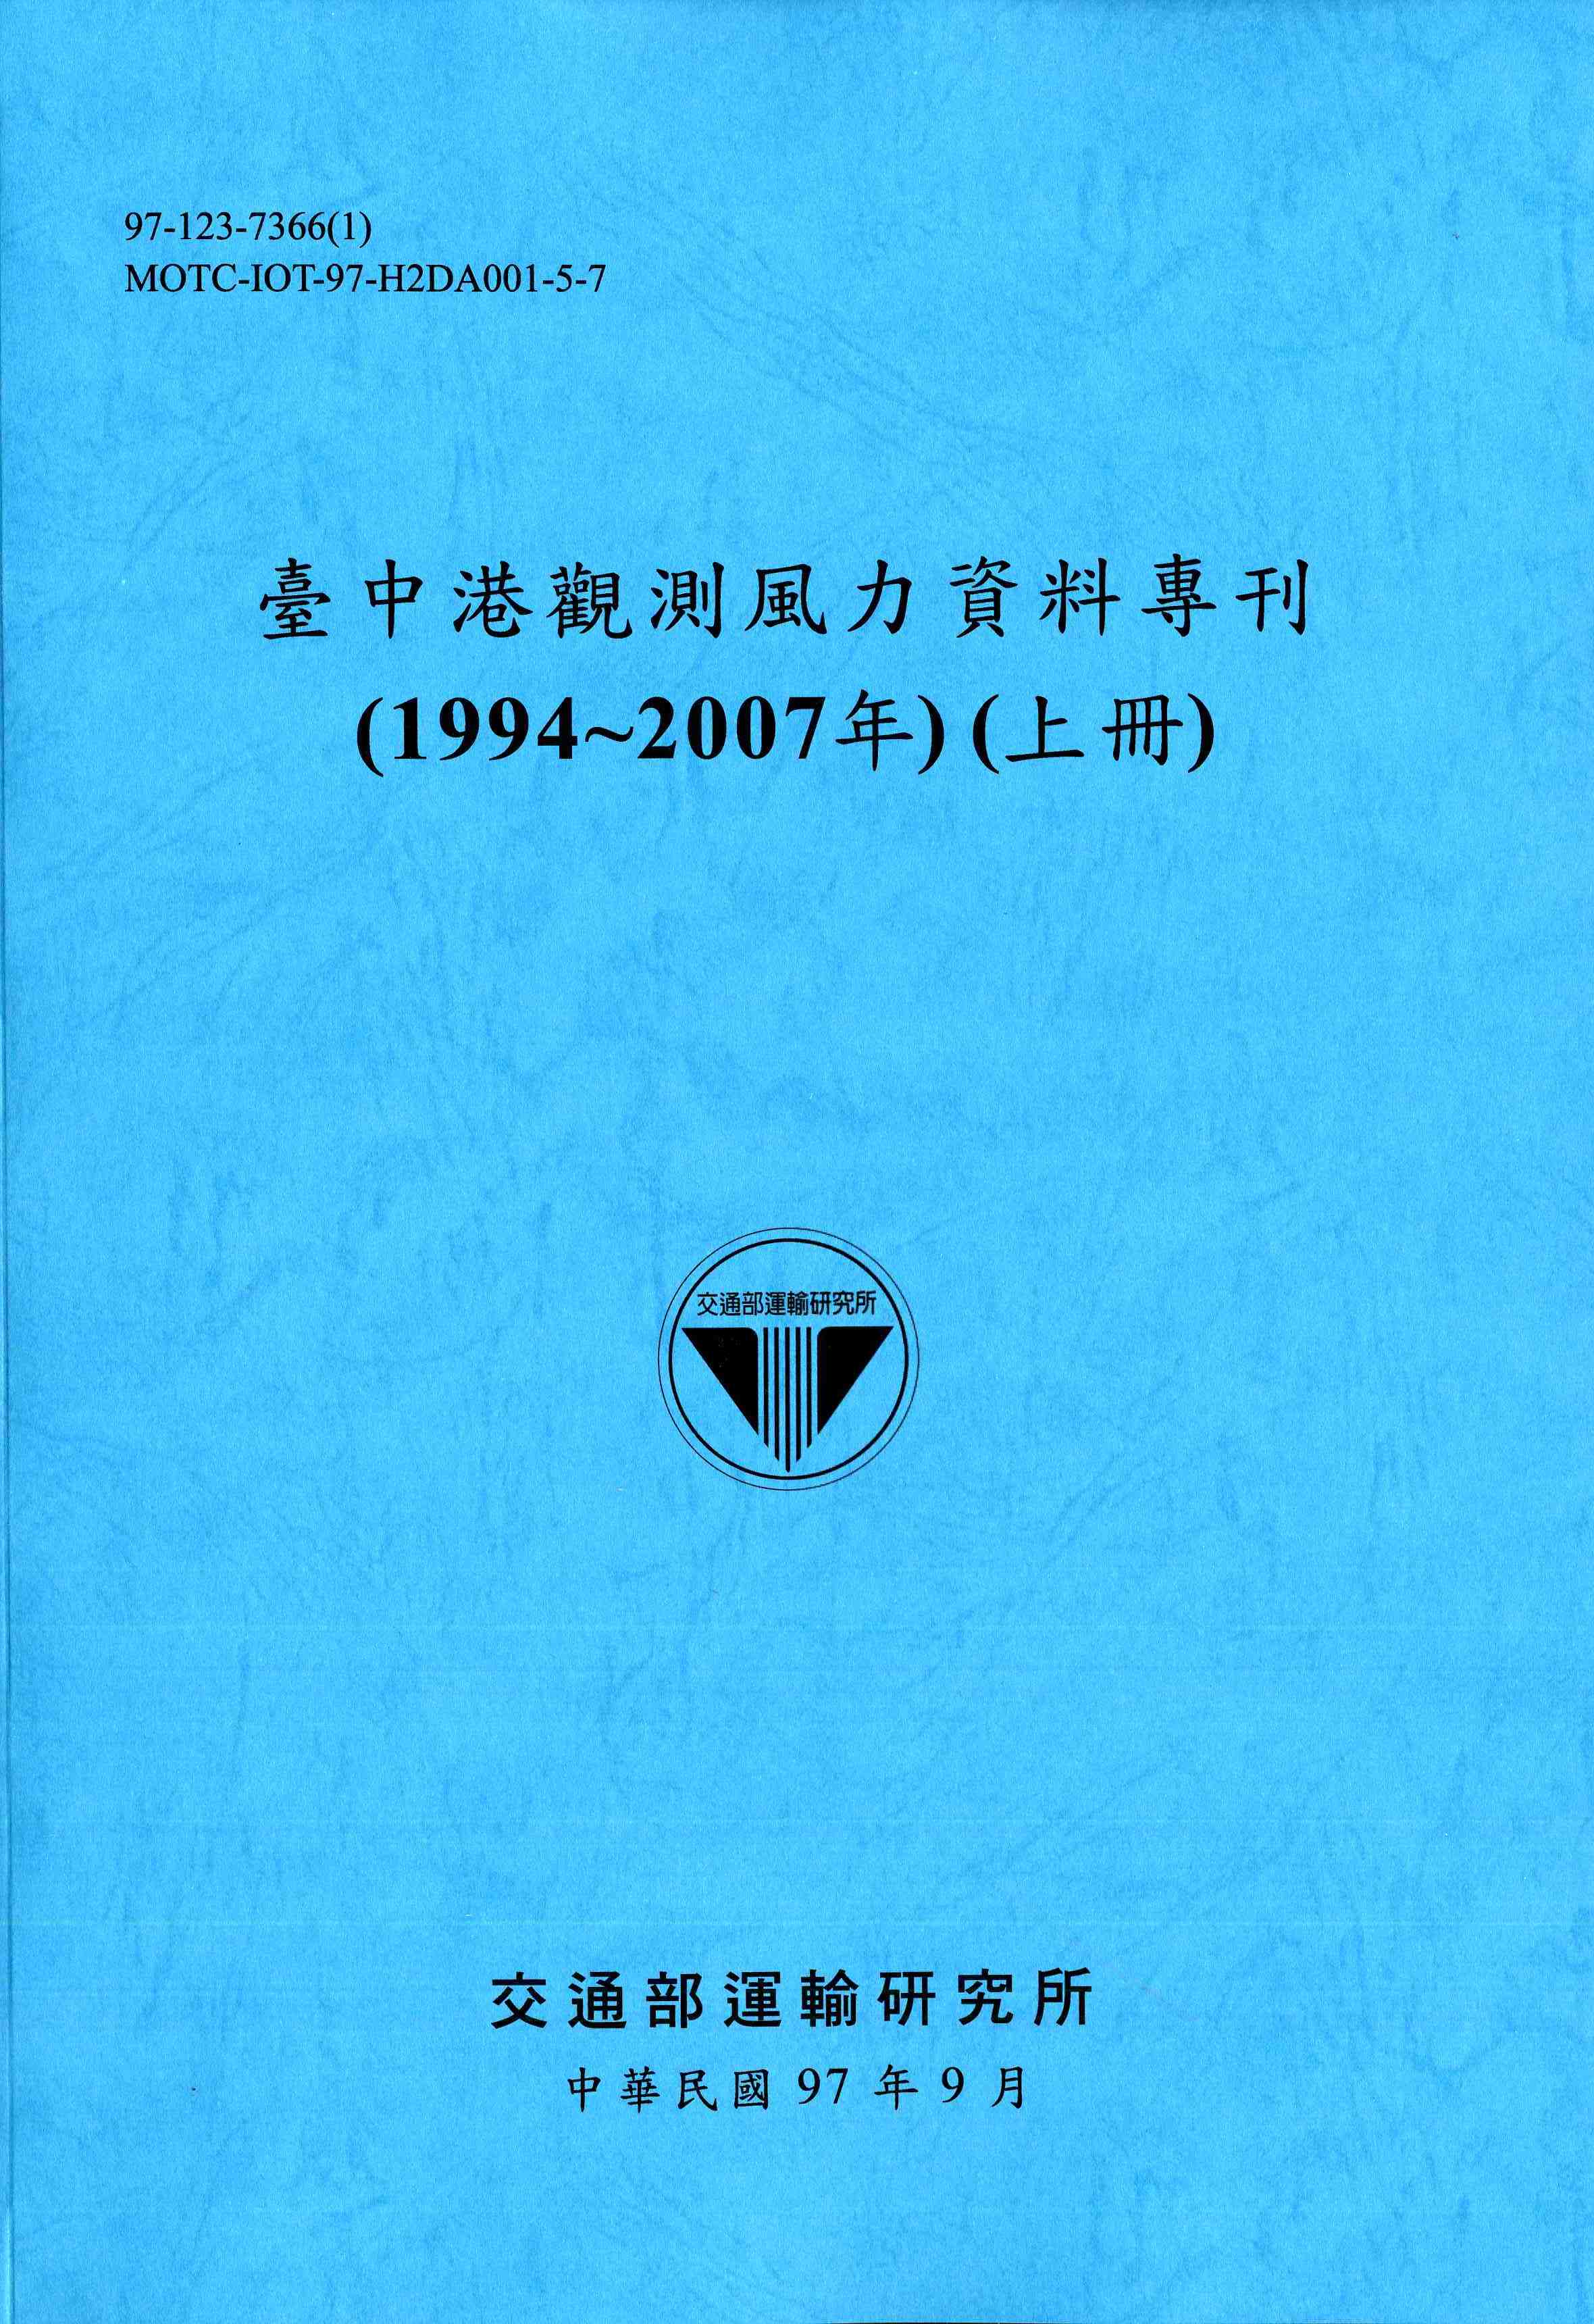 臺中港觀測風力資料專刊(1994~2007年)(上冊)